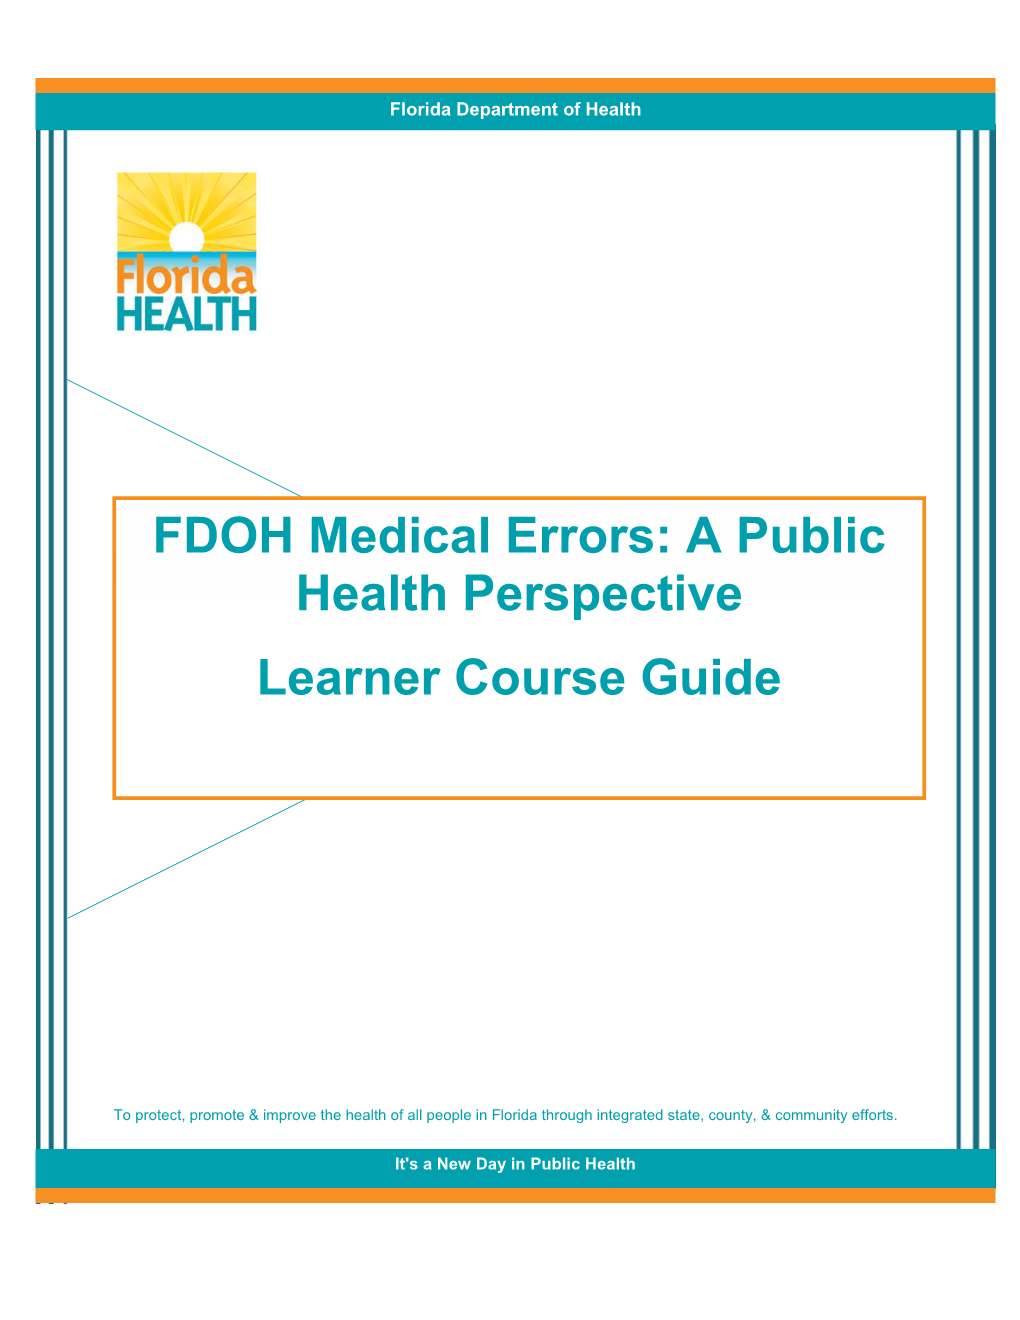 FDOH Medical Errors: a Public